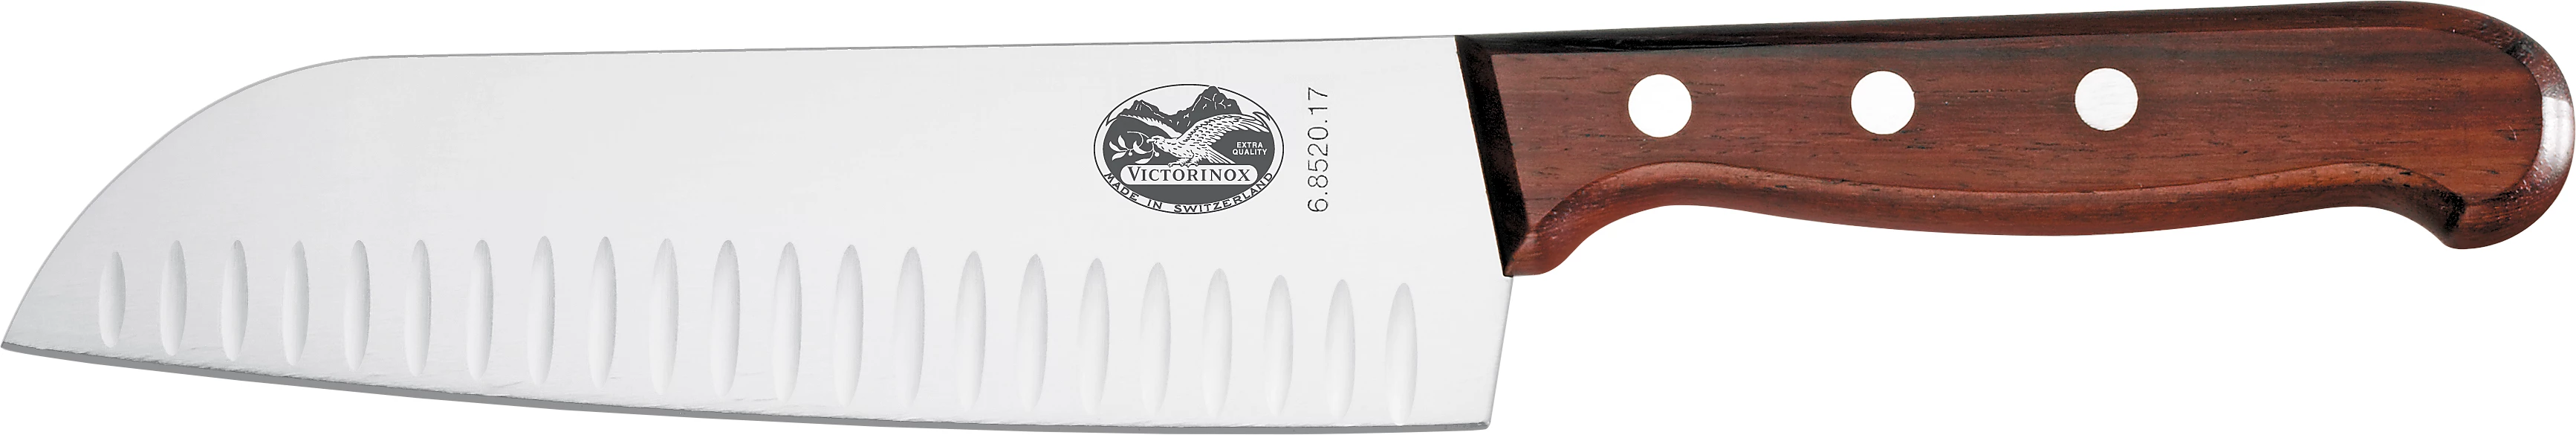 Victorinox santokukniv med træskaft, luftskær, 17 cm